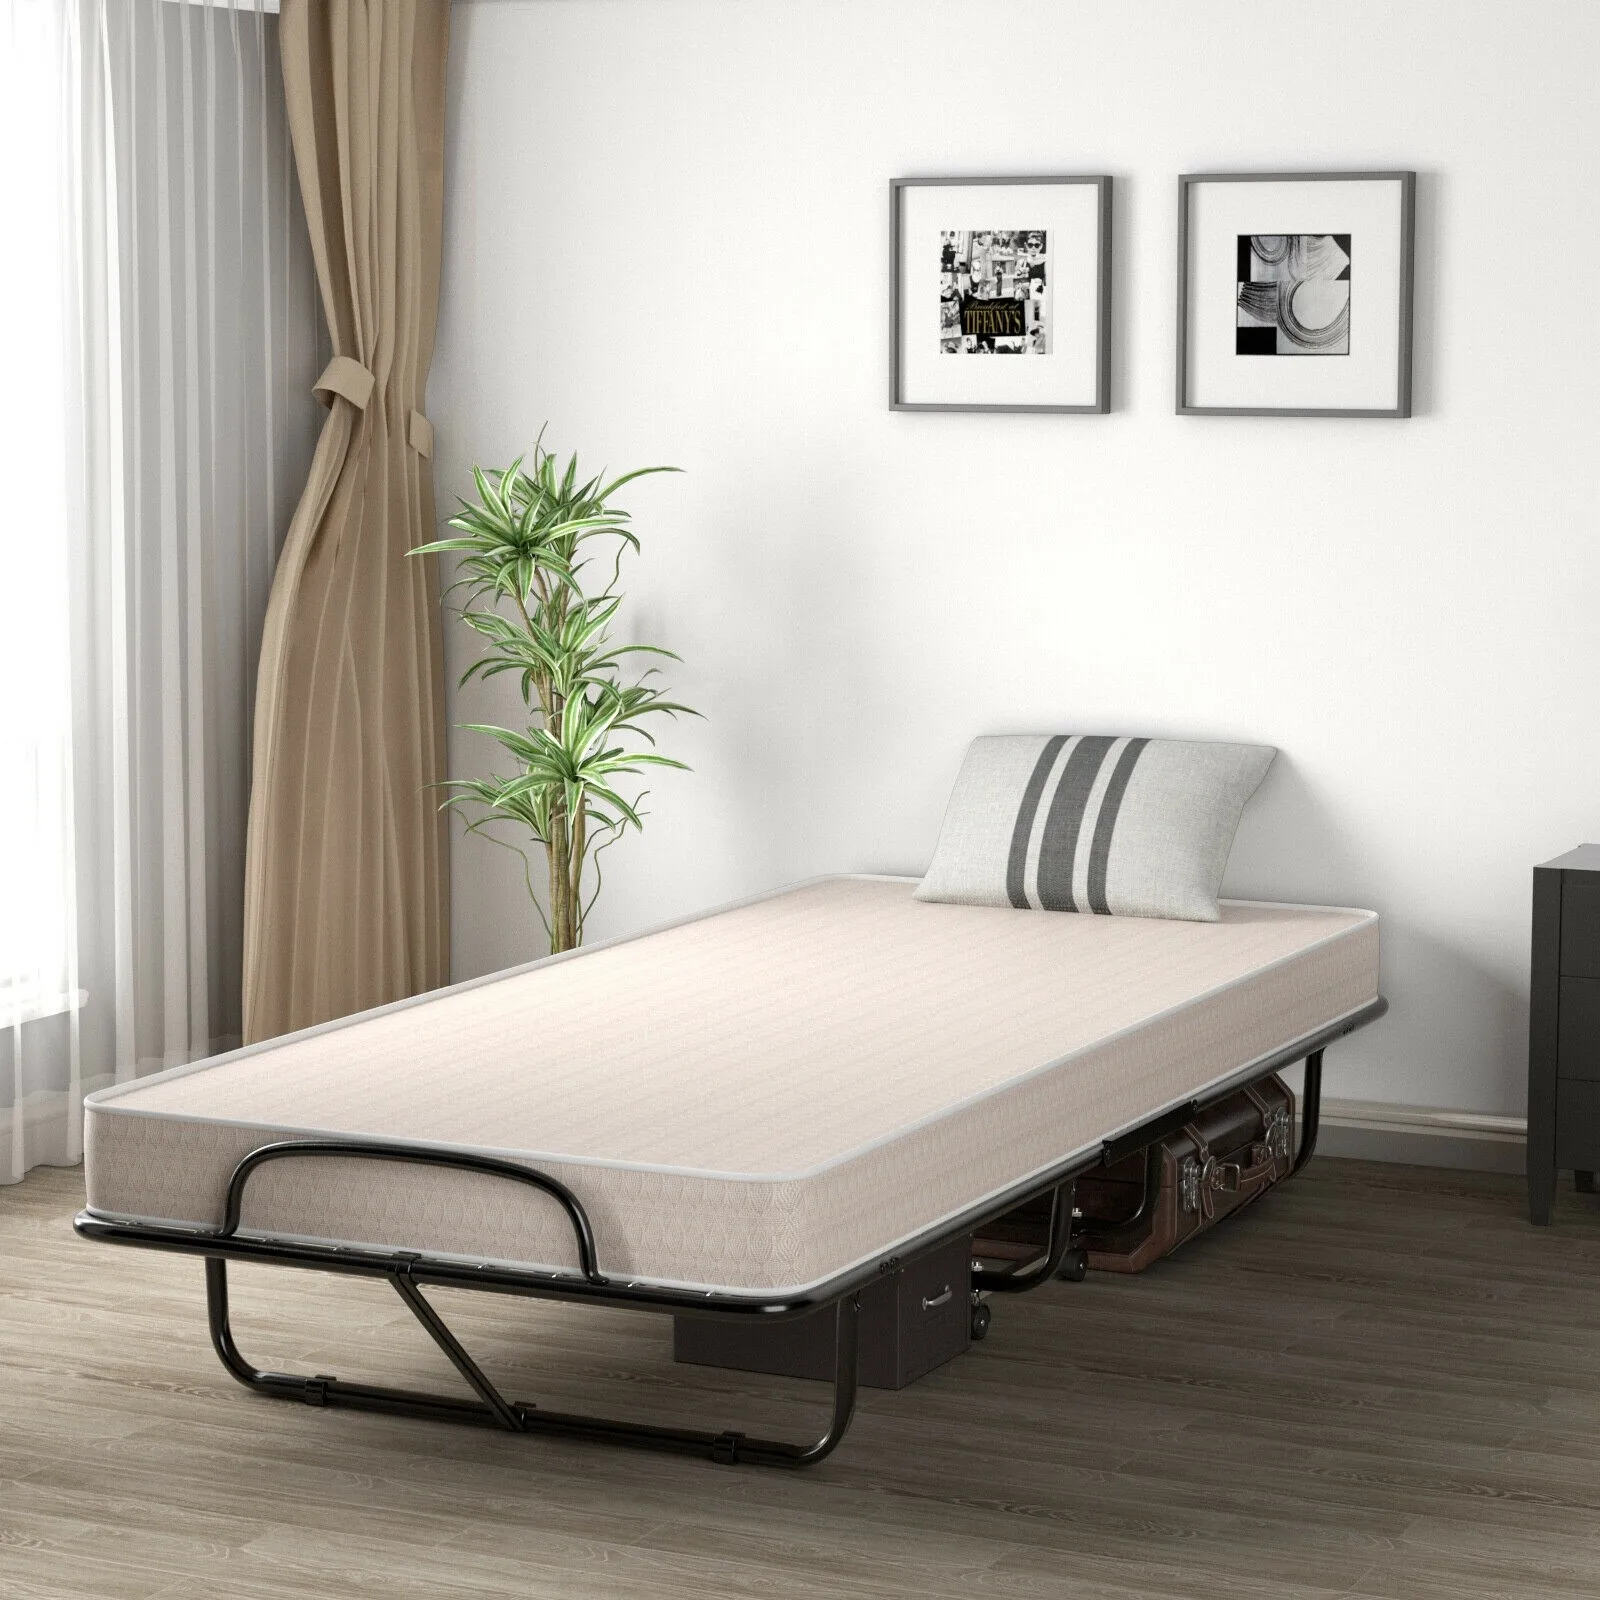 H.J WeDoo Marco de cama simple Cama plegable cama de invitados Base de Cama de Metal con ruedas extraíbles 90 x 196 cm negro 